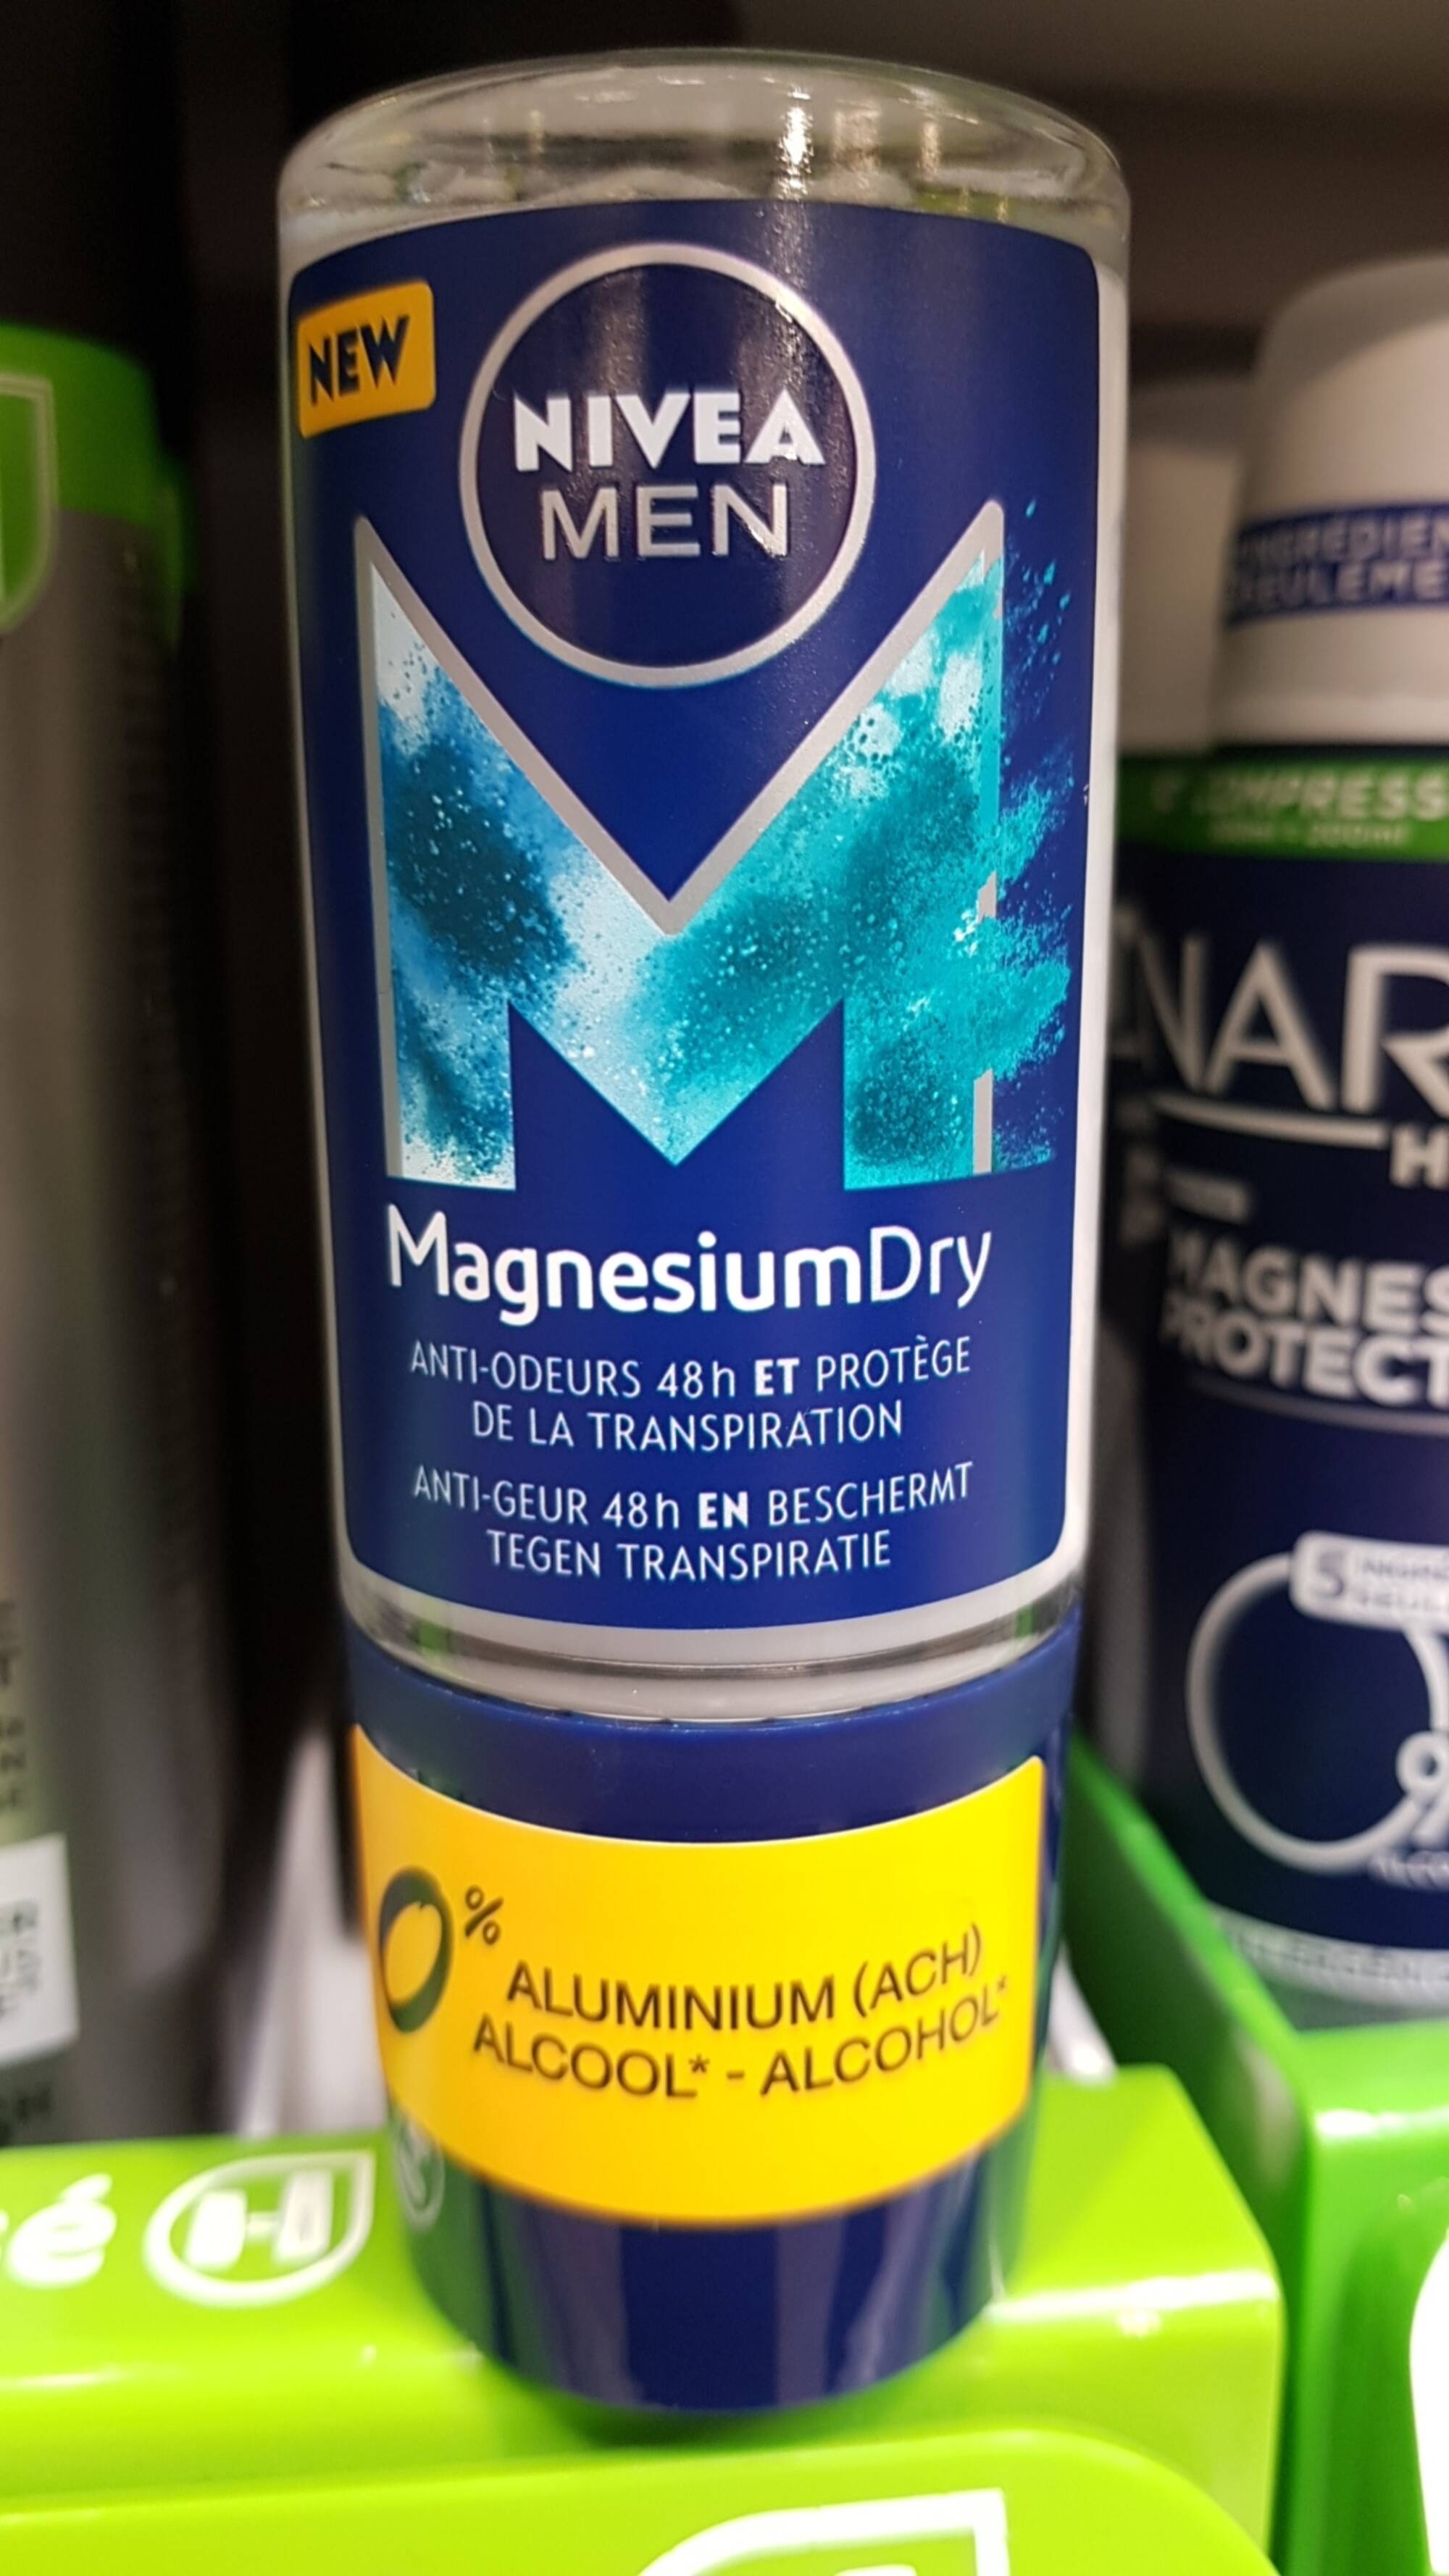 NIVEA - Men magnesium dry - Anti-odeurs 48h